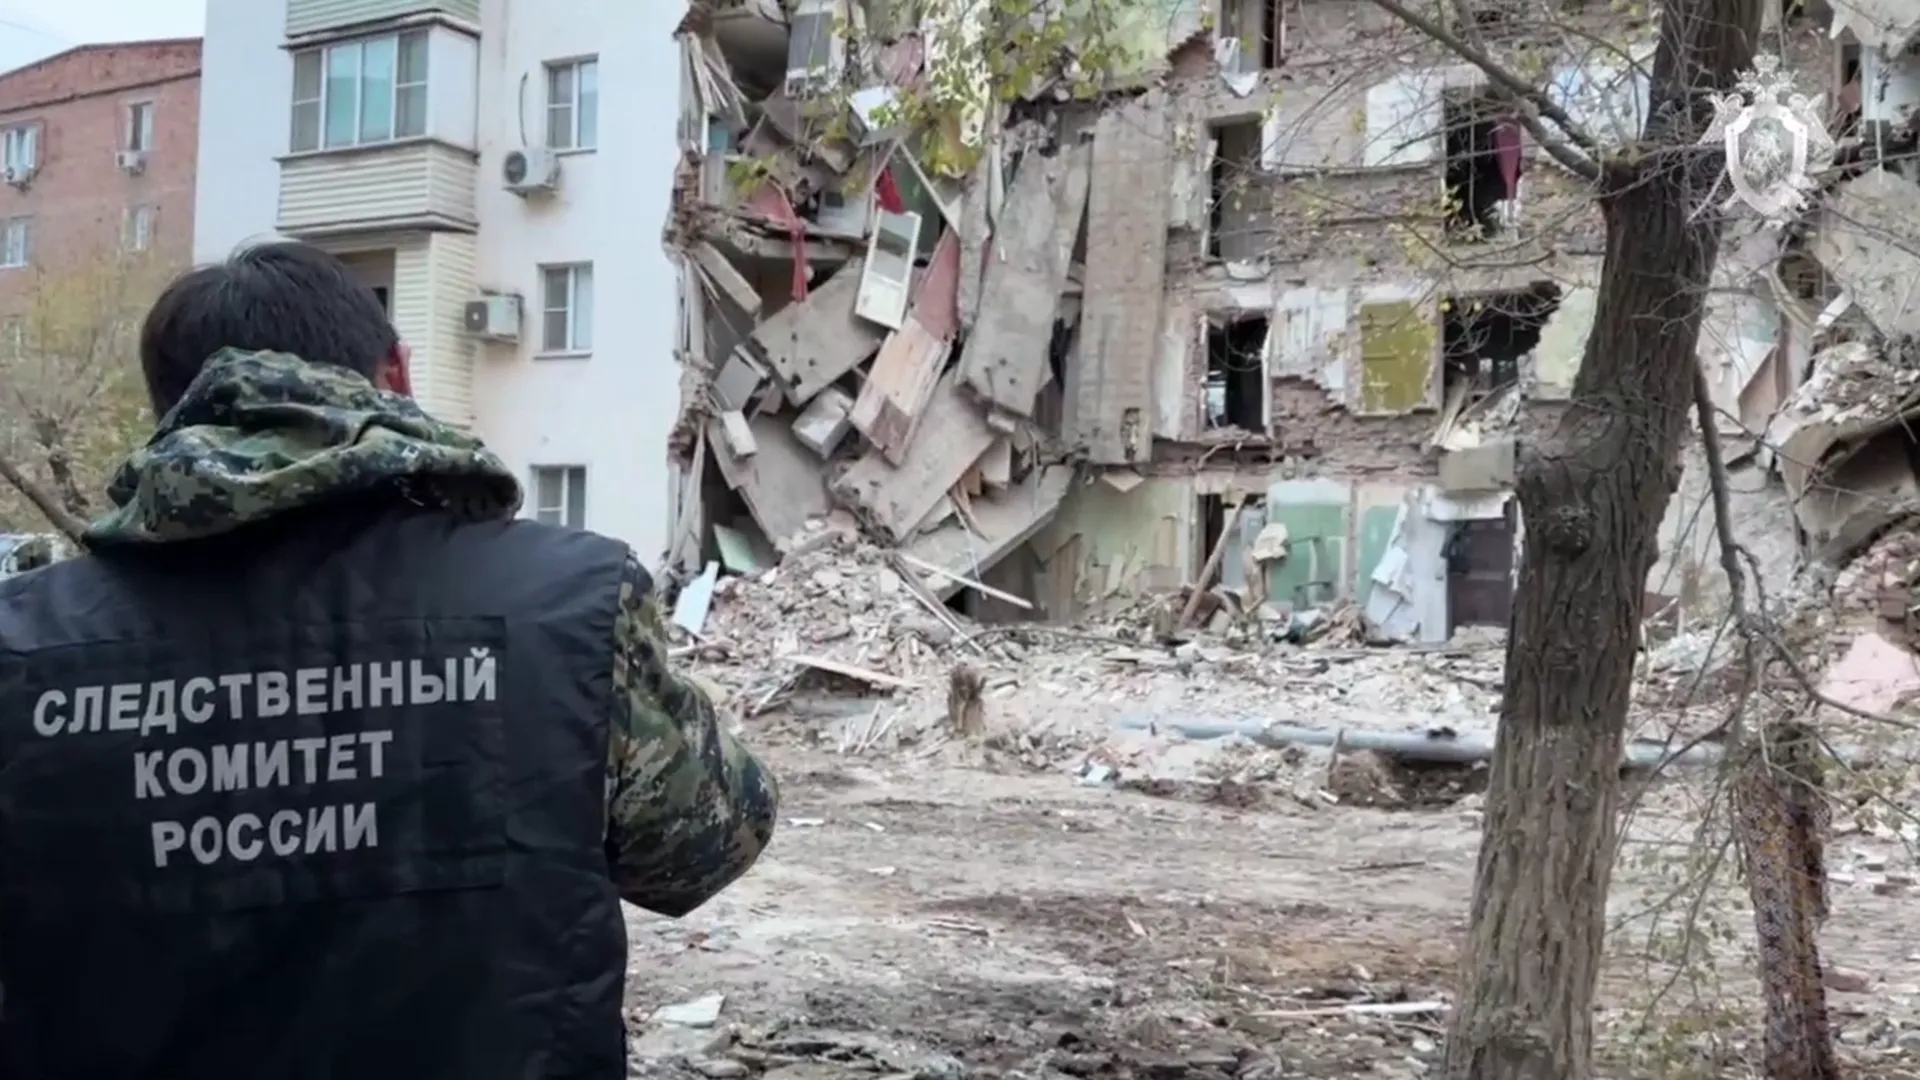 Московские криминалисты подключились к расследованию дела об обрушении части дома в Астрахани